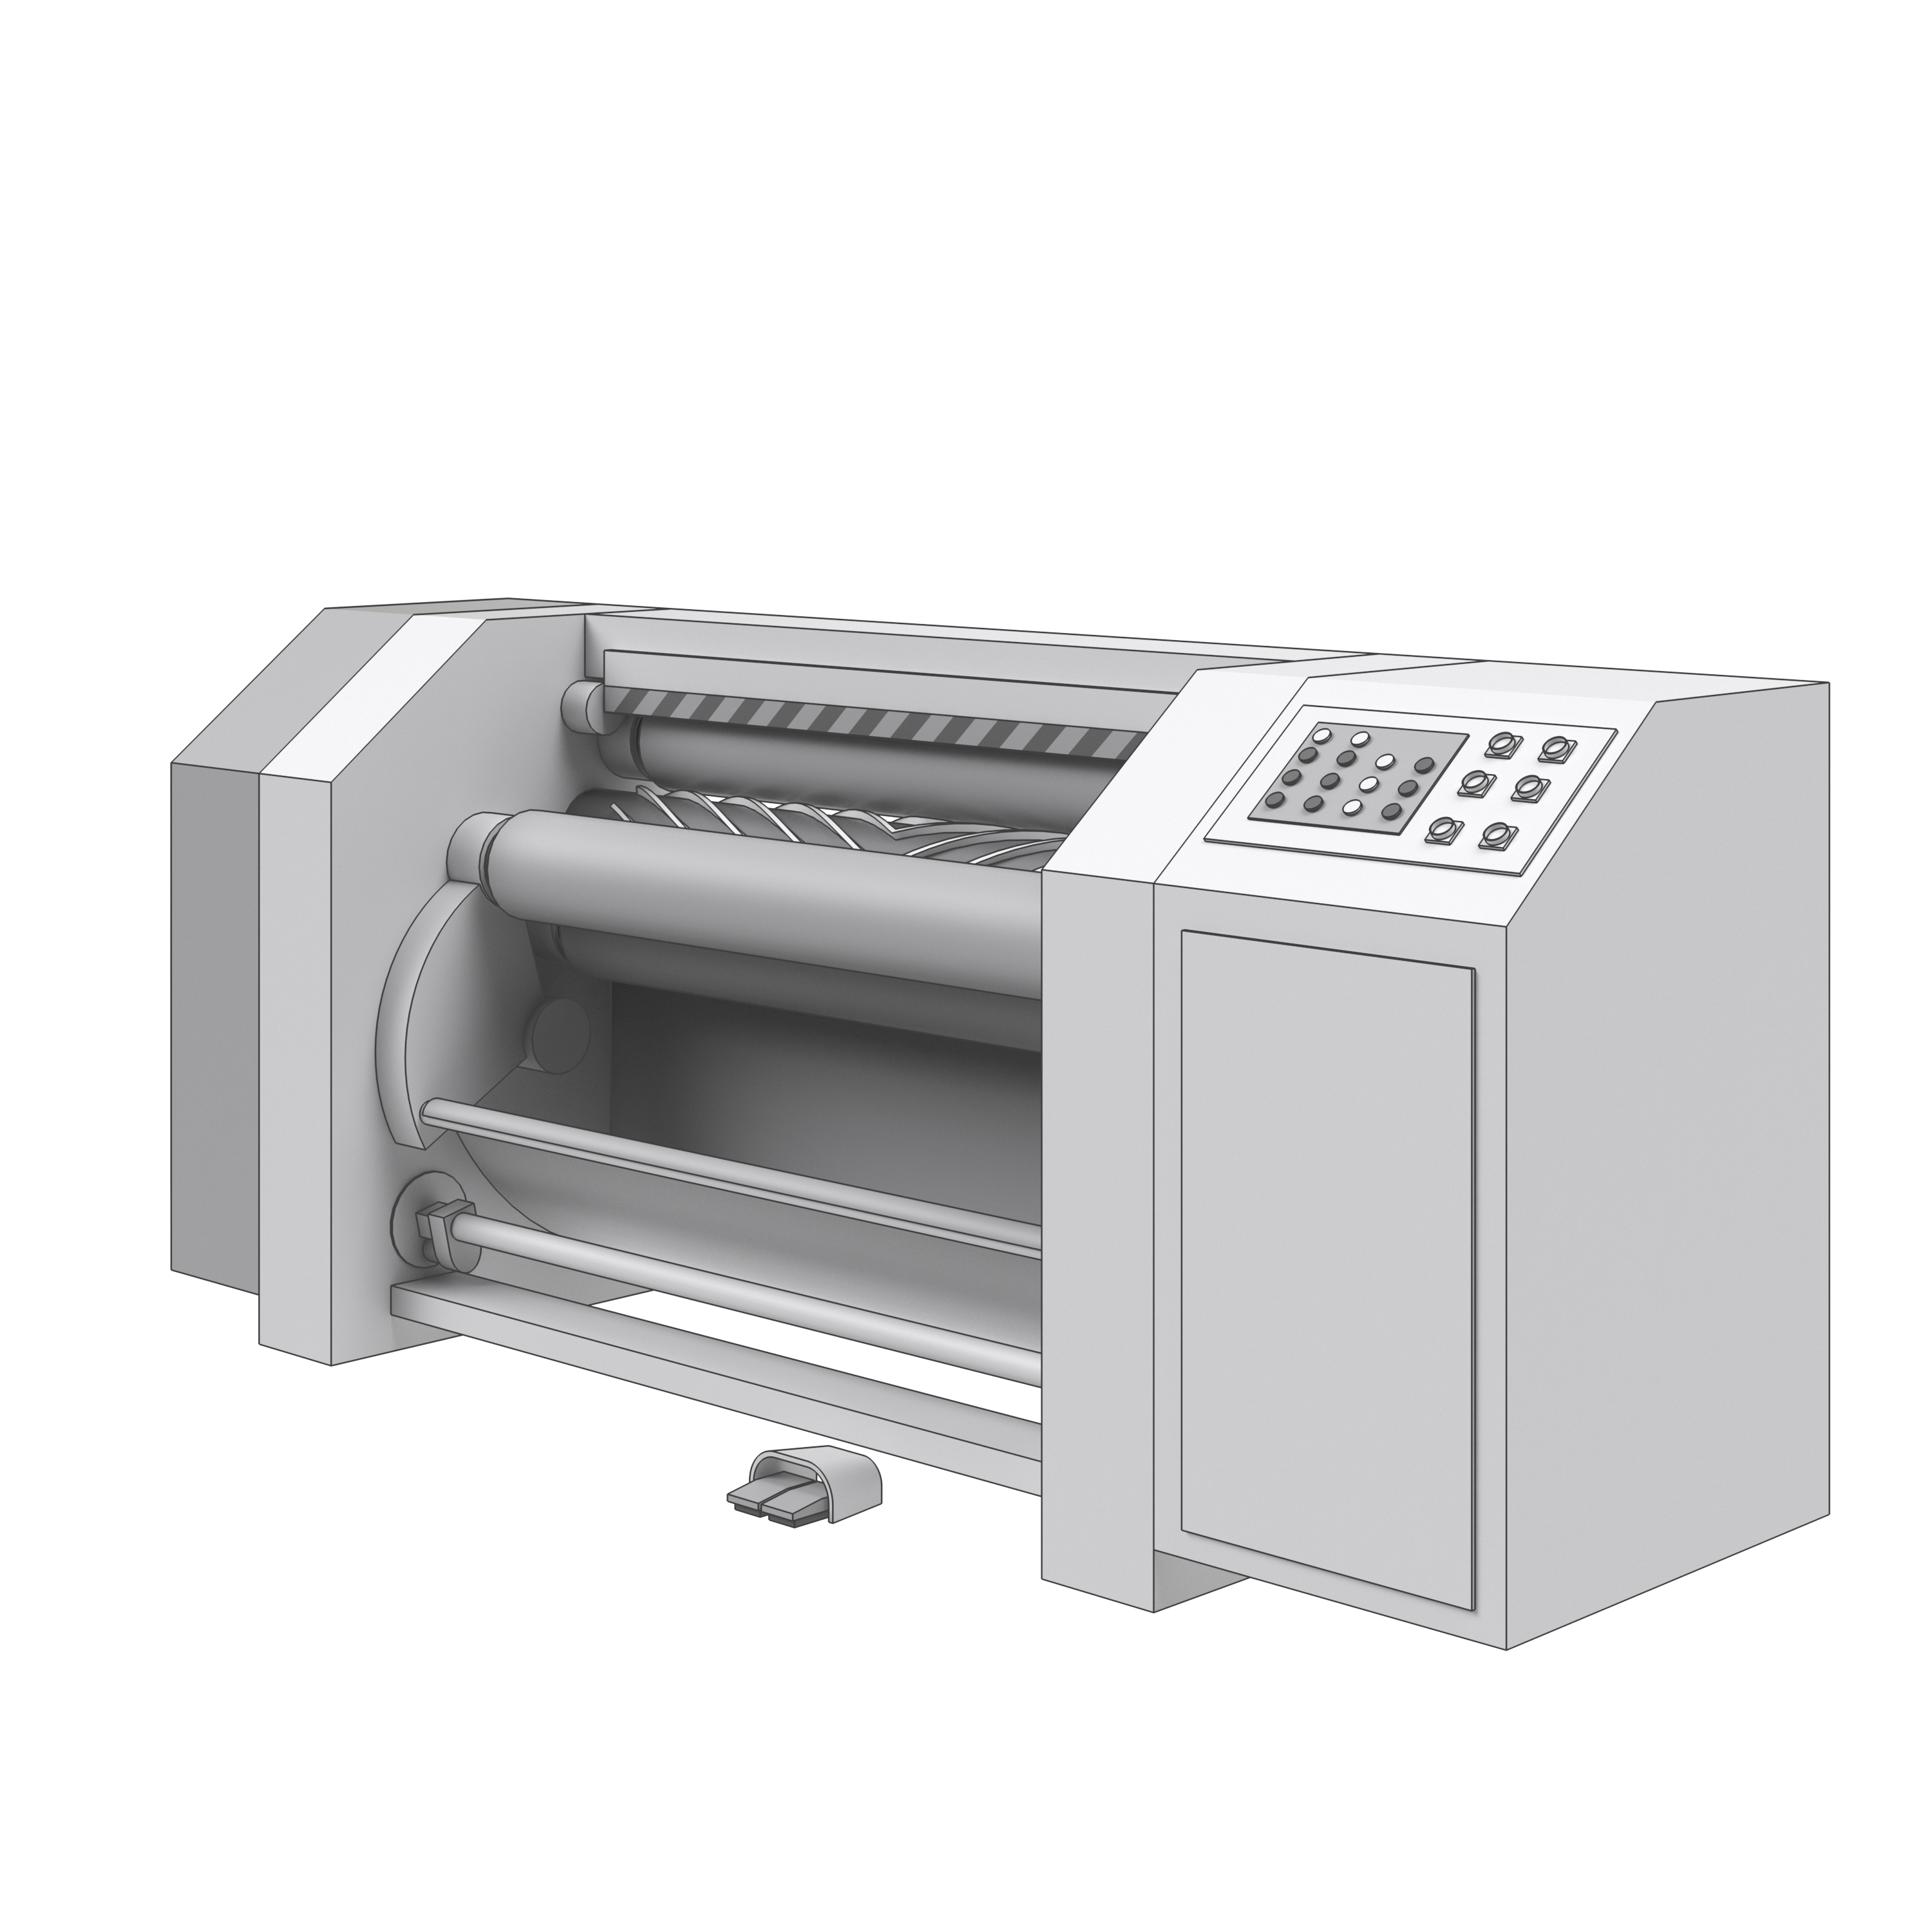 A01.14 – Комбинированная машина для отжима и сушки